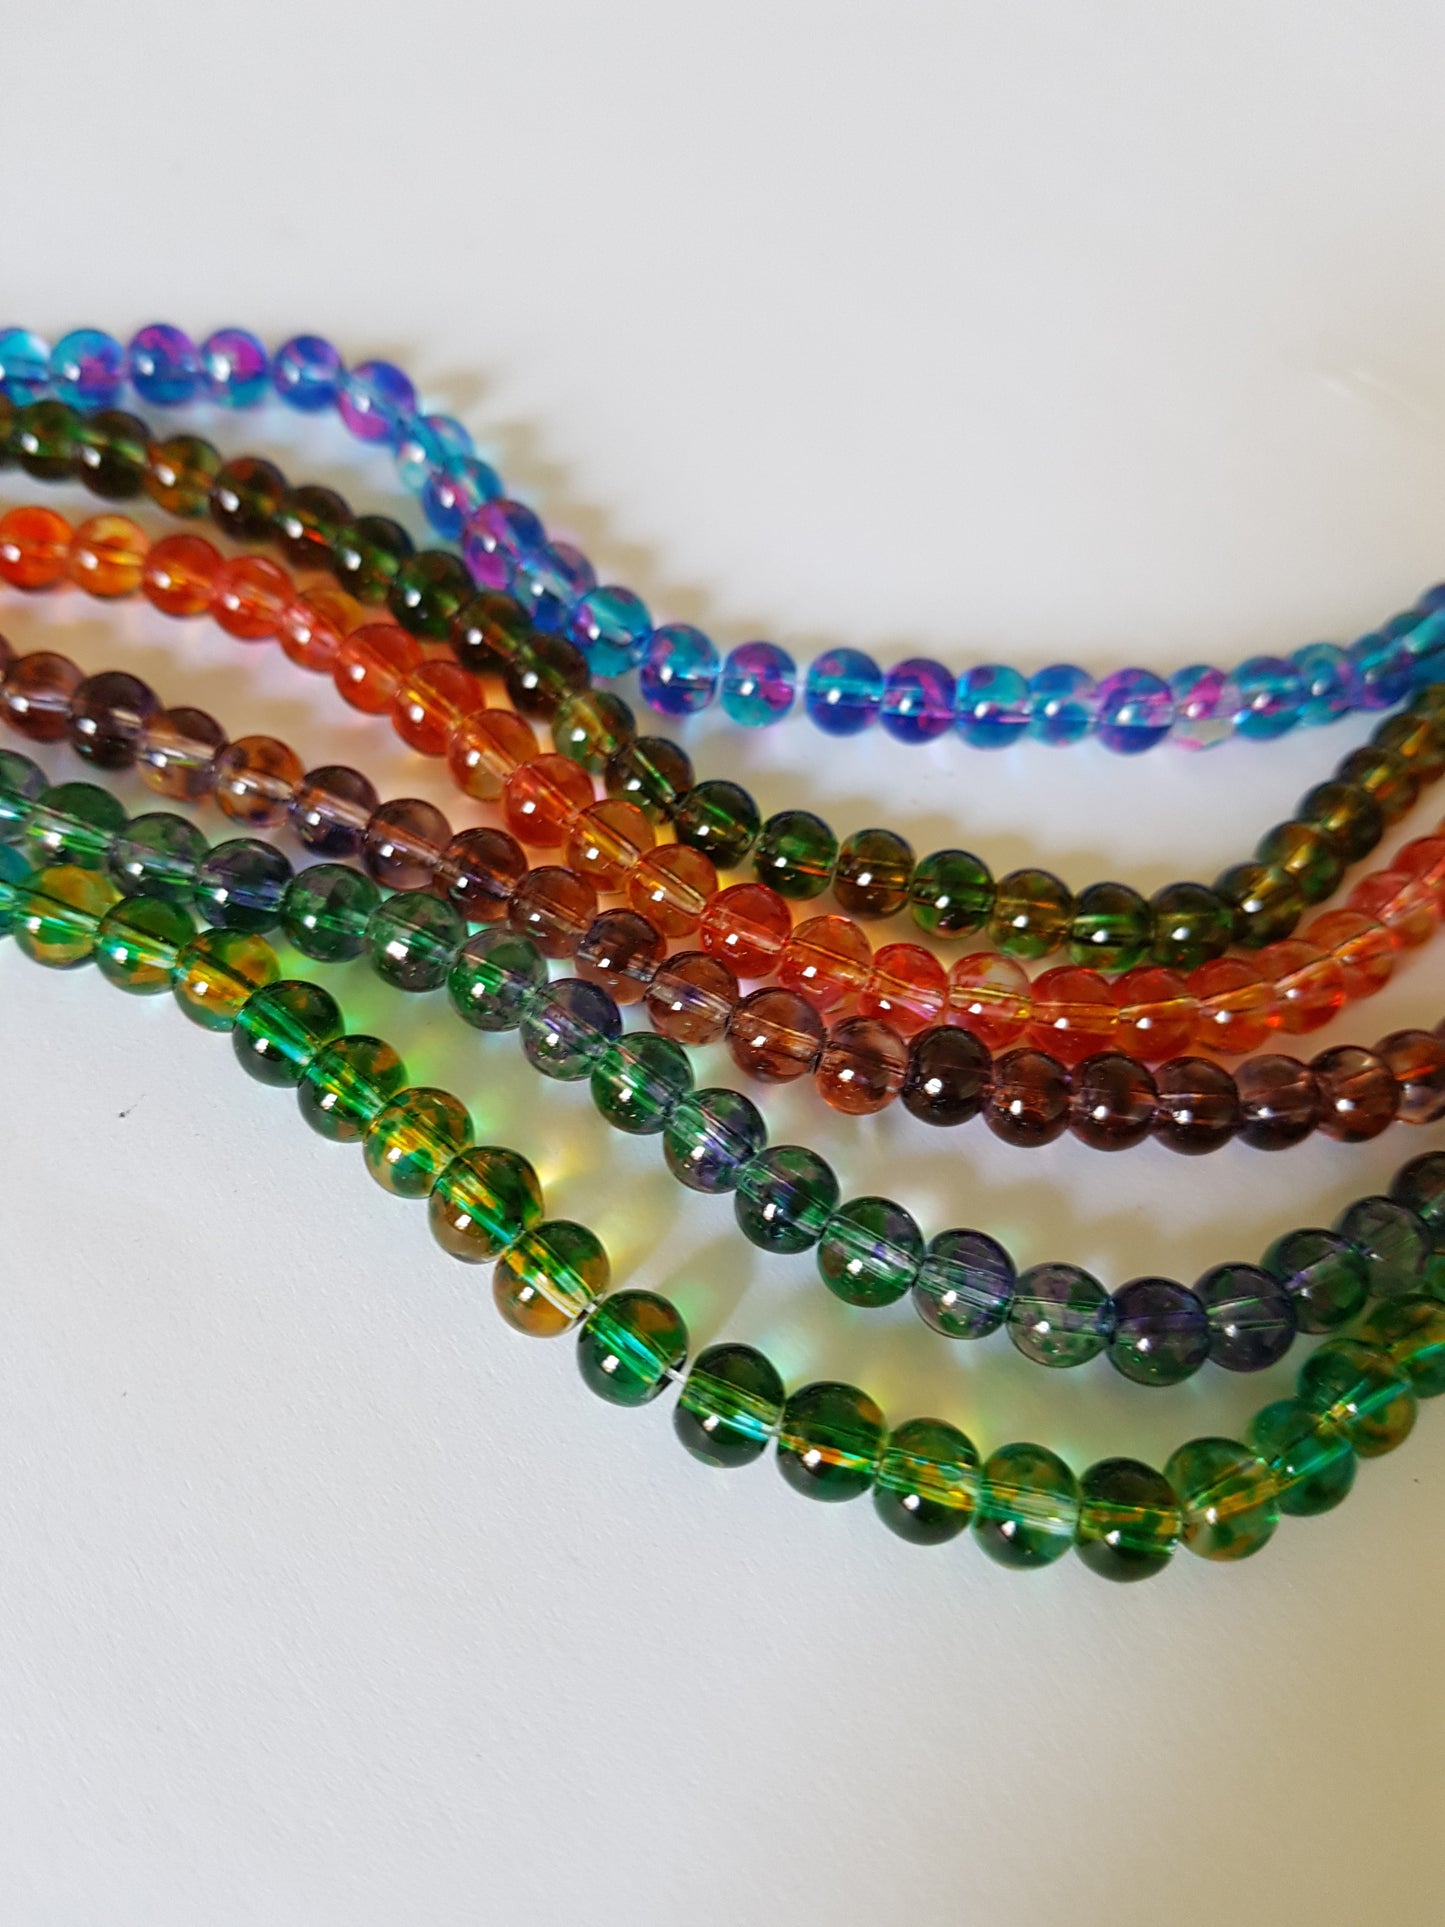 6mm mottled glass beads